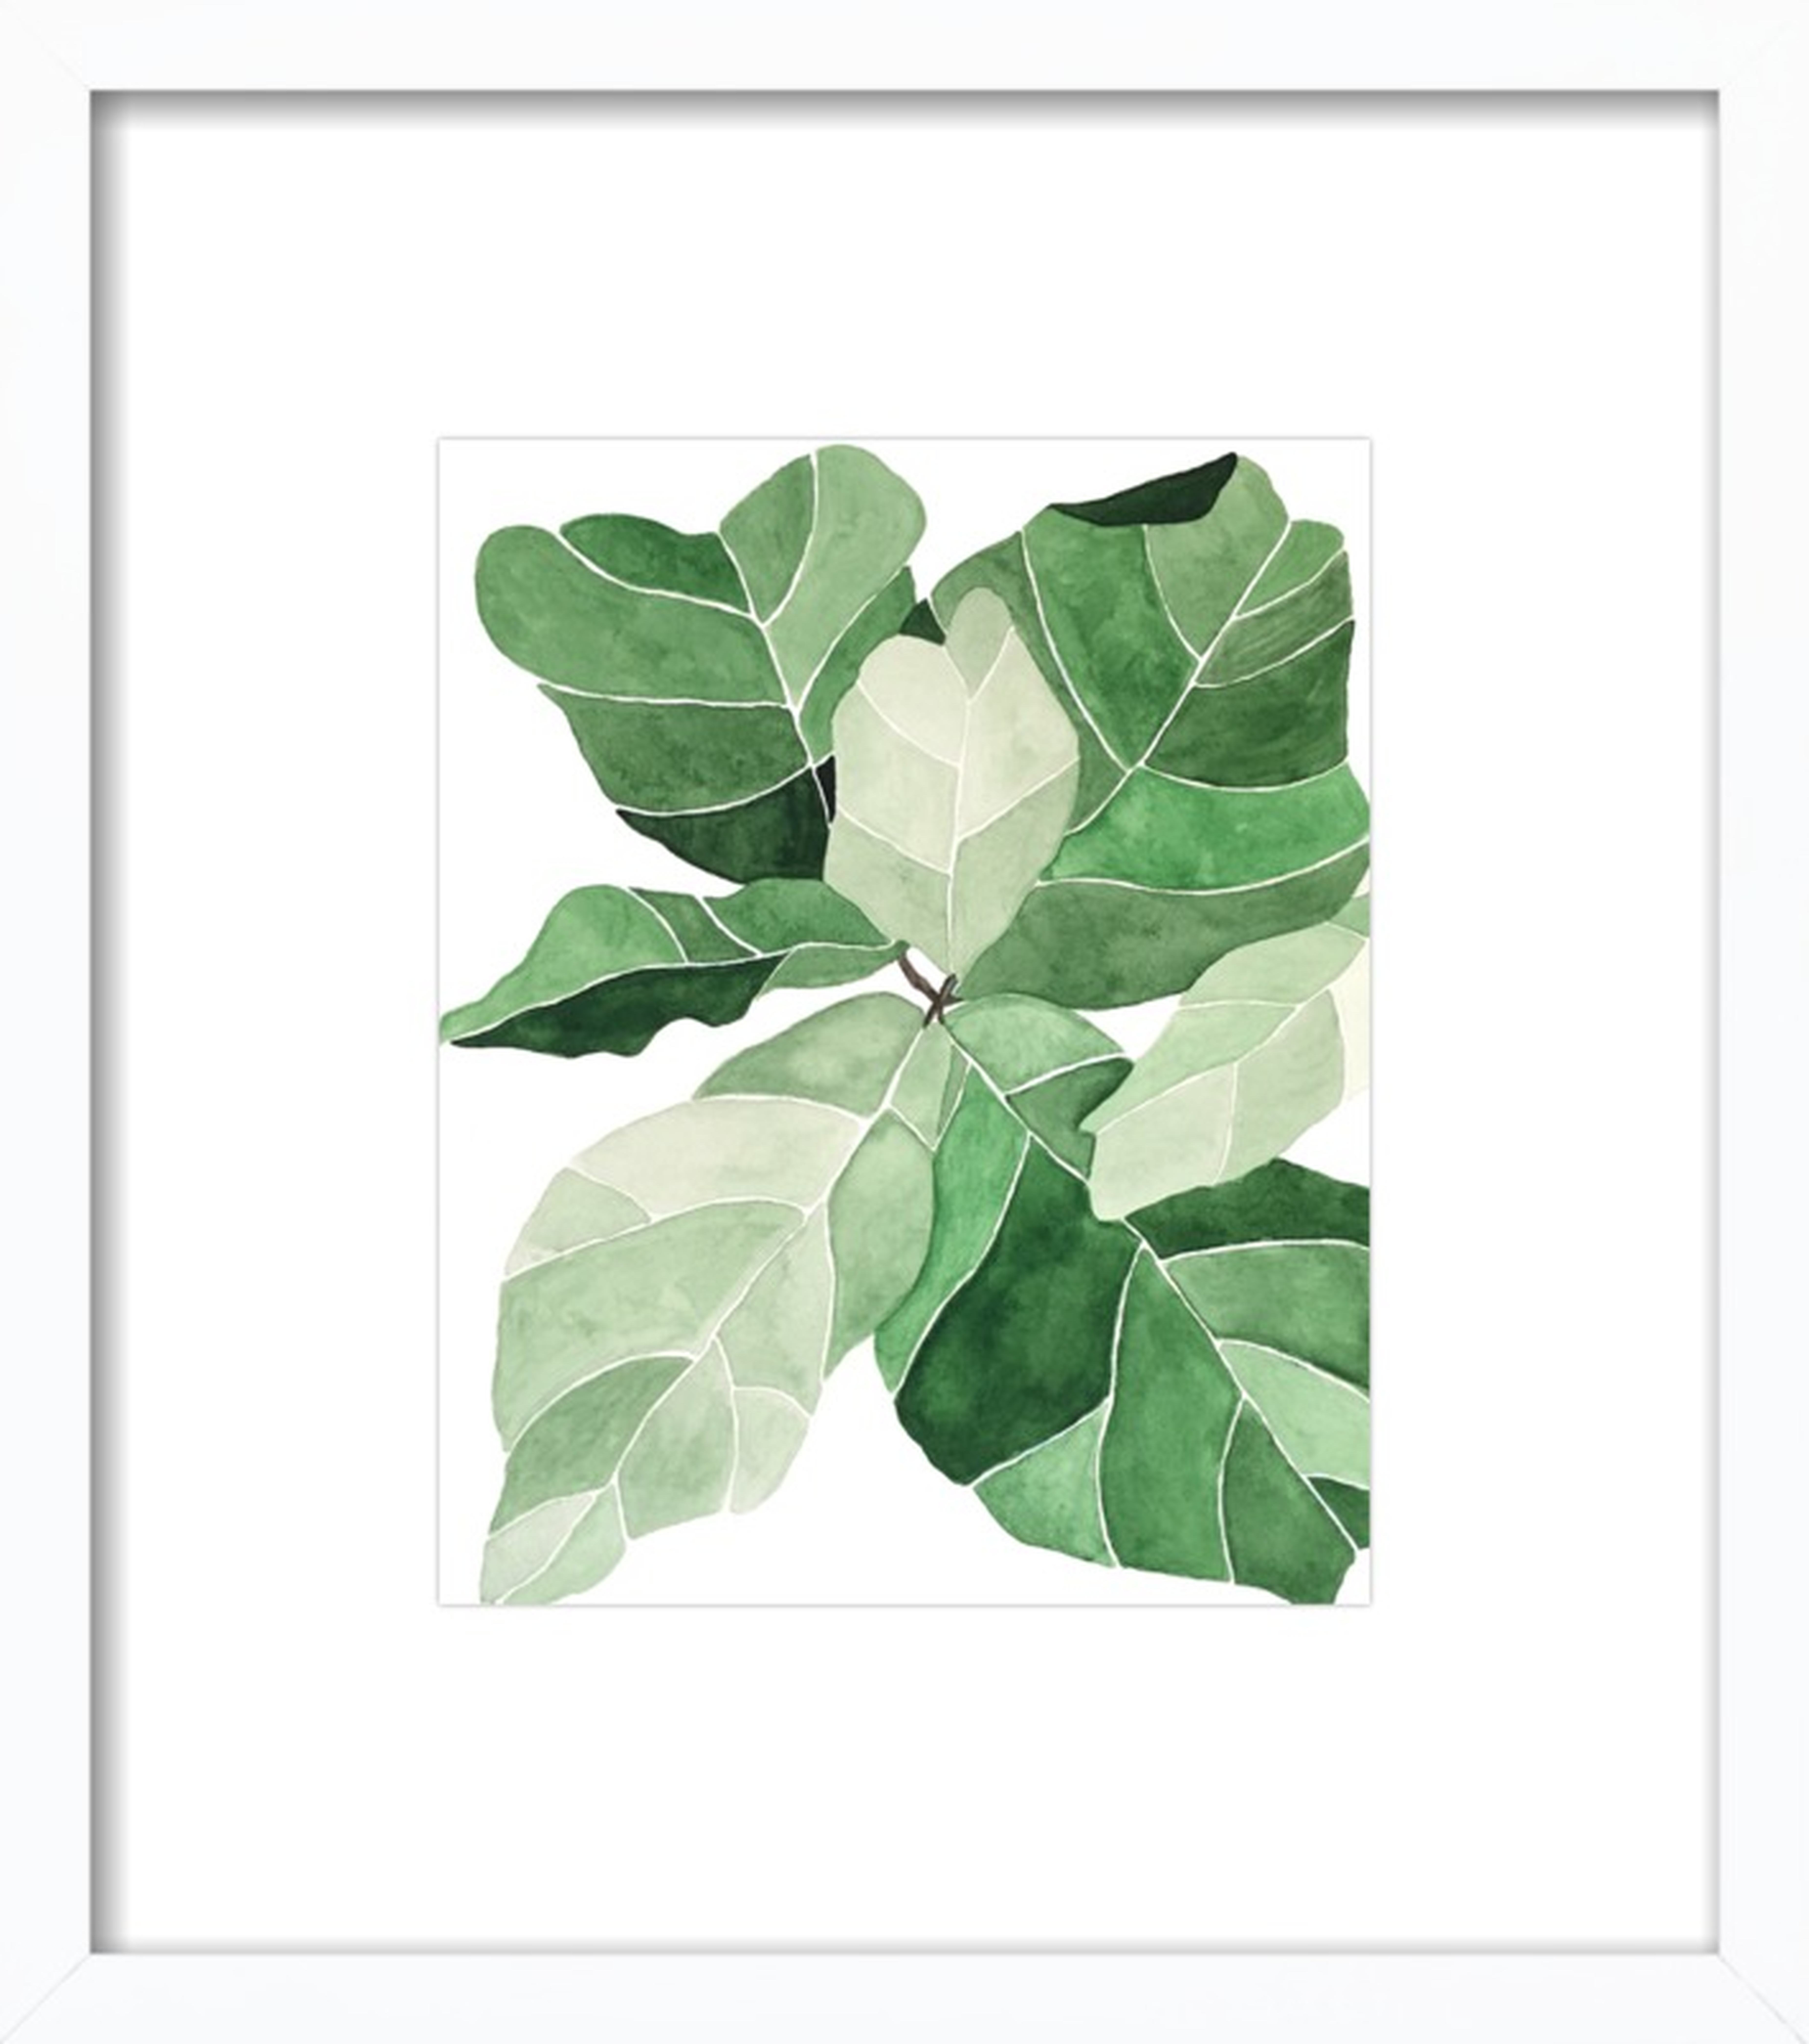 Fiddle Leaf Fig by Emily Grady Dodge for Artfully Walls - Artfully Walls